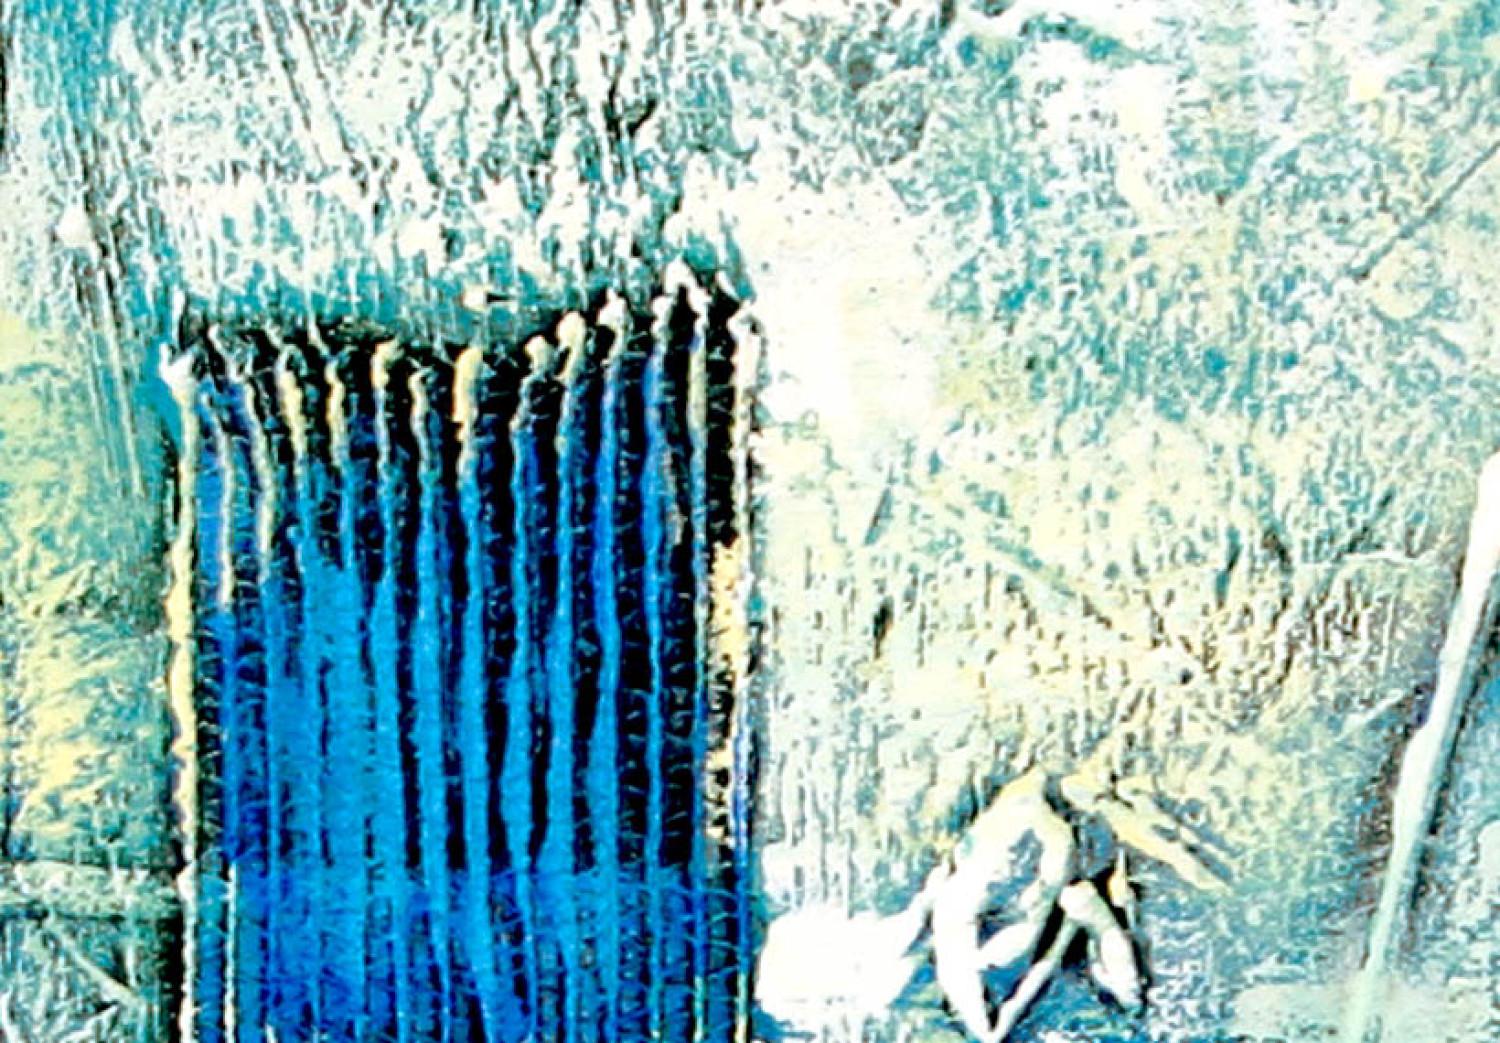 Cuadro decorativo Fantasía (3-piezas) - abstracción azul de textura variada